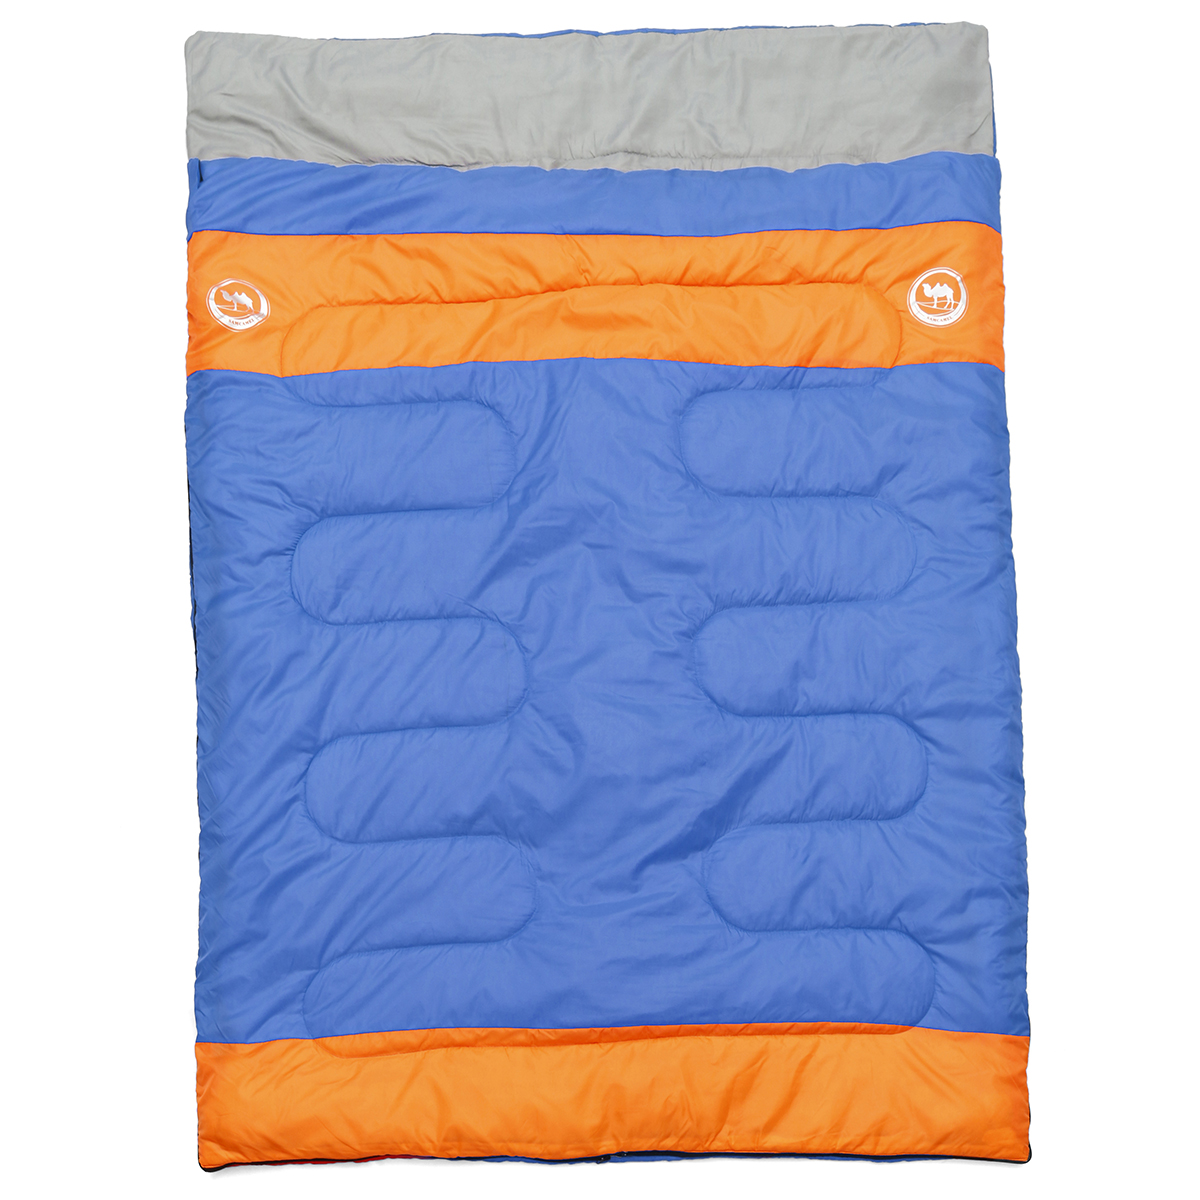 

Outdoor Camping 2 People Double Sleeping Bag Waterproof Thermal Folding Sleeping Pad